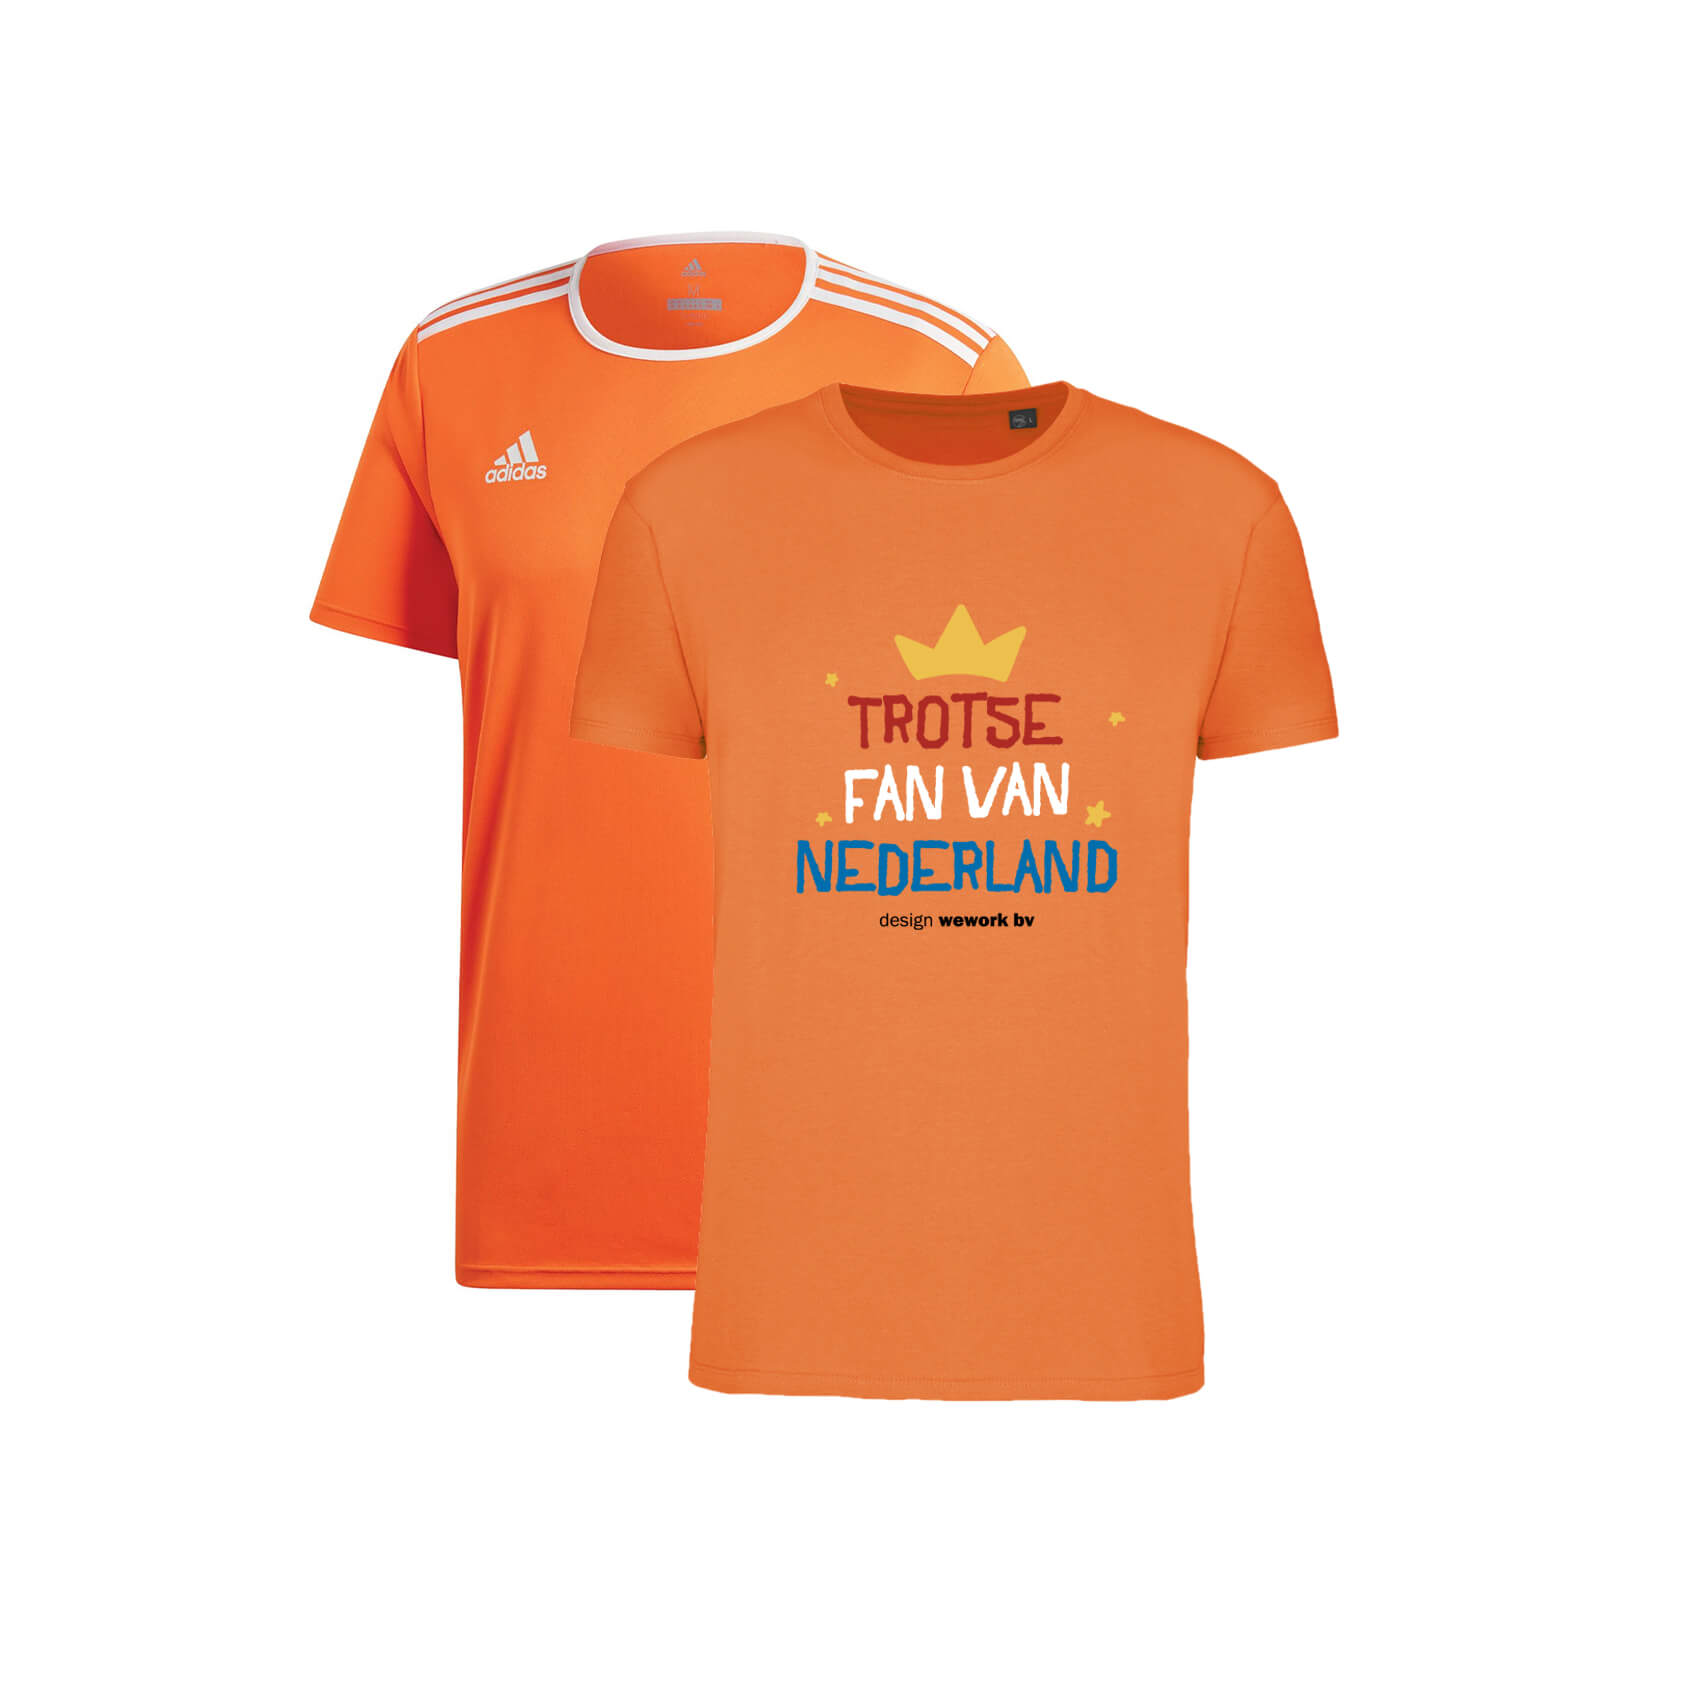 Bijwonen Let op idee Oranje shirts bedrukken - Kies uit 4 modellen vanaf 5 stuks gedrukt!